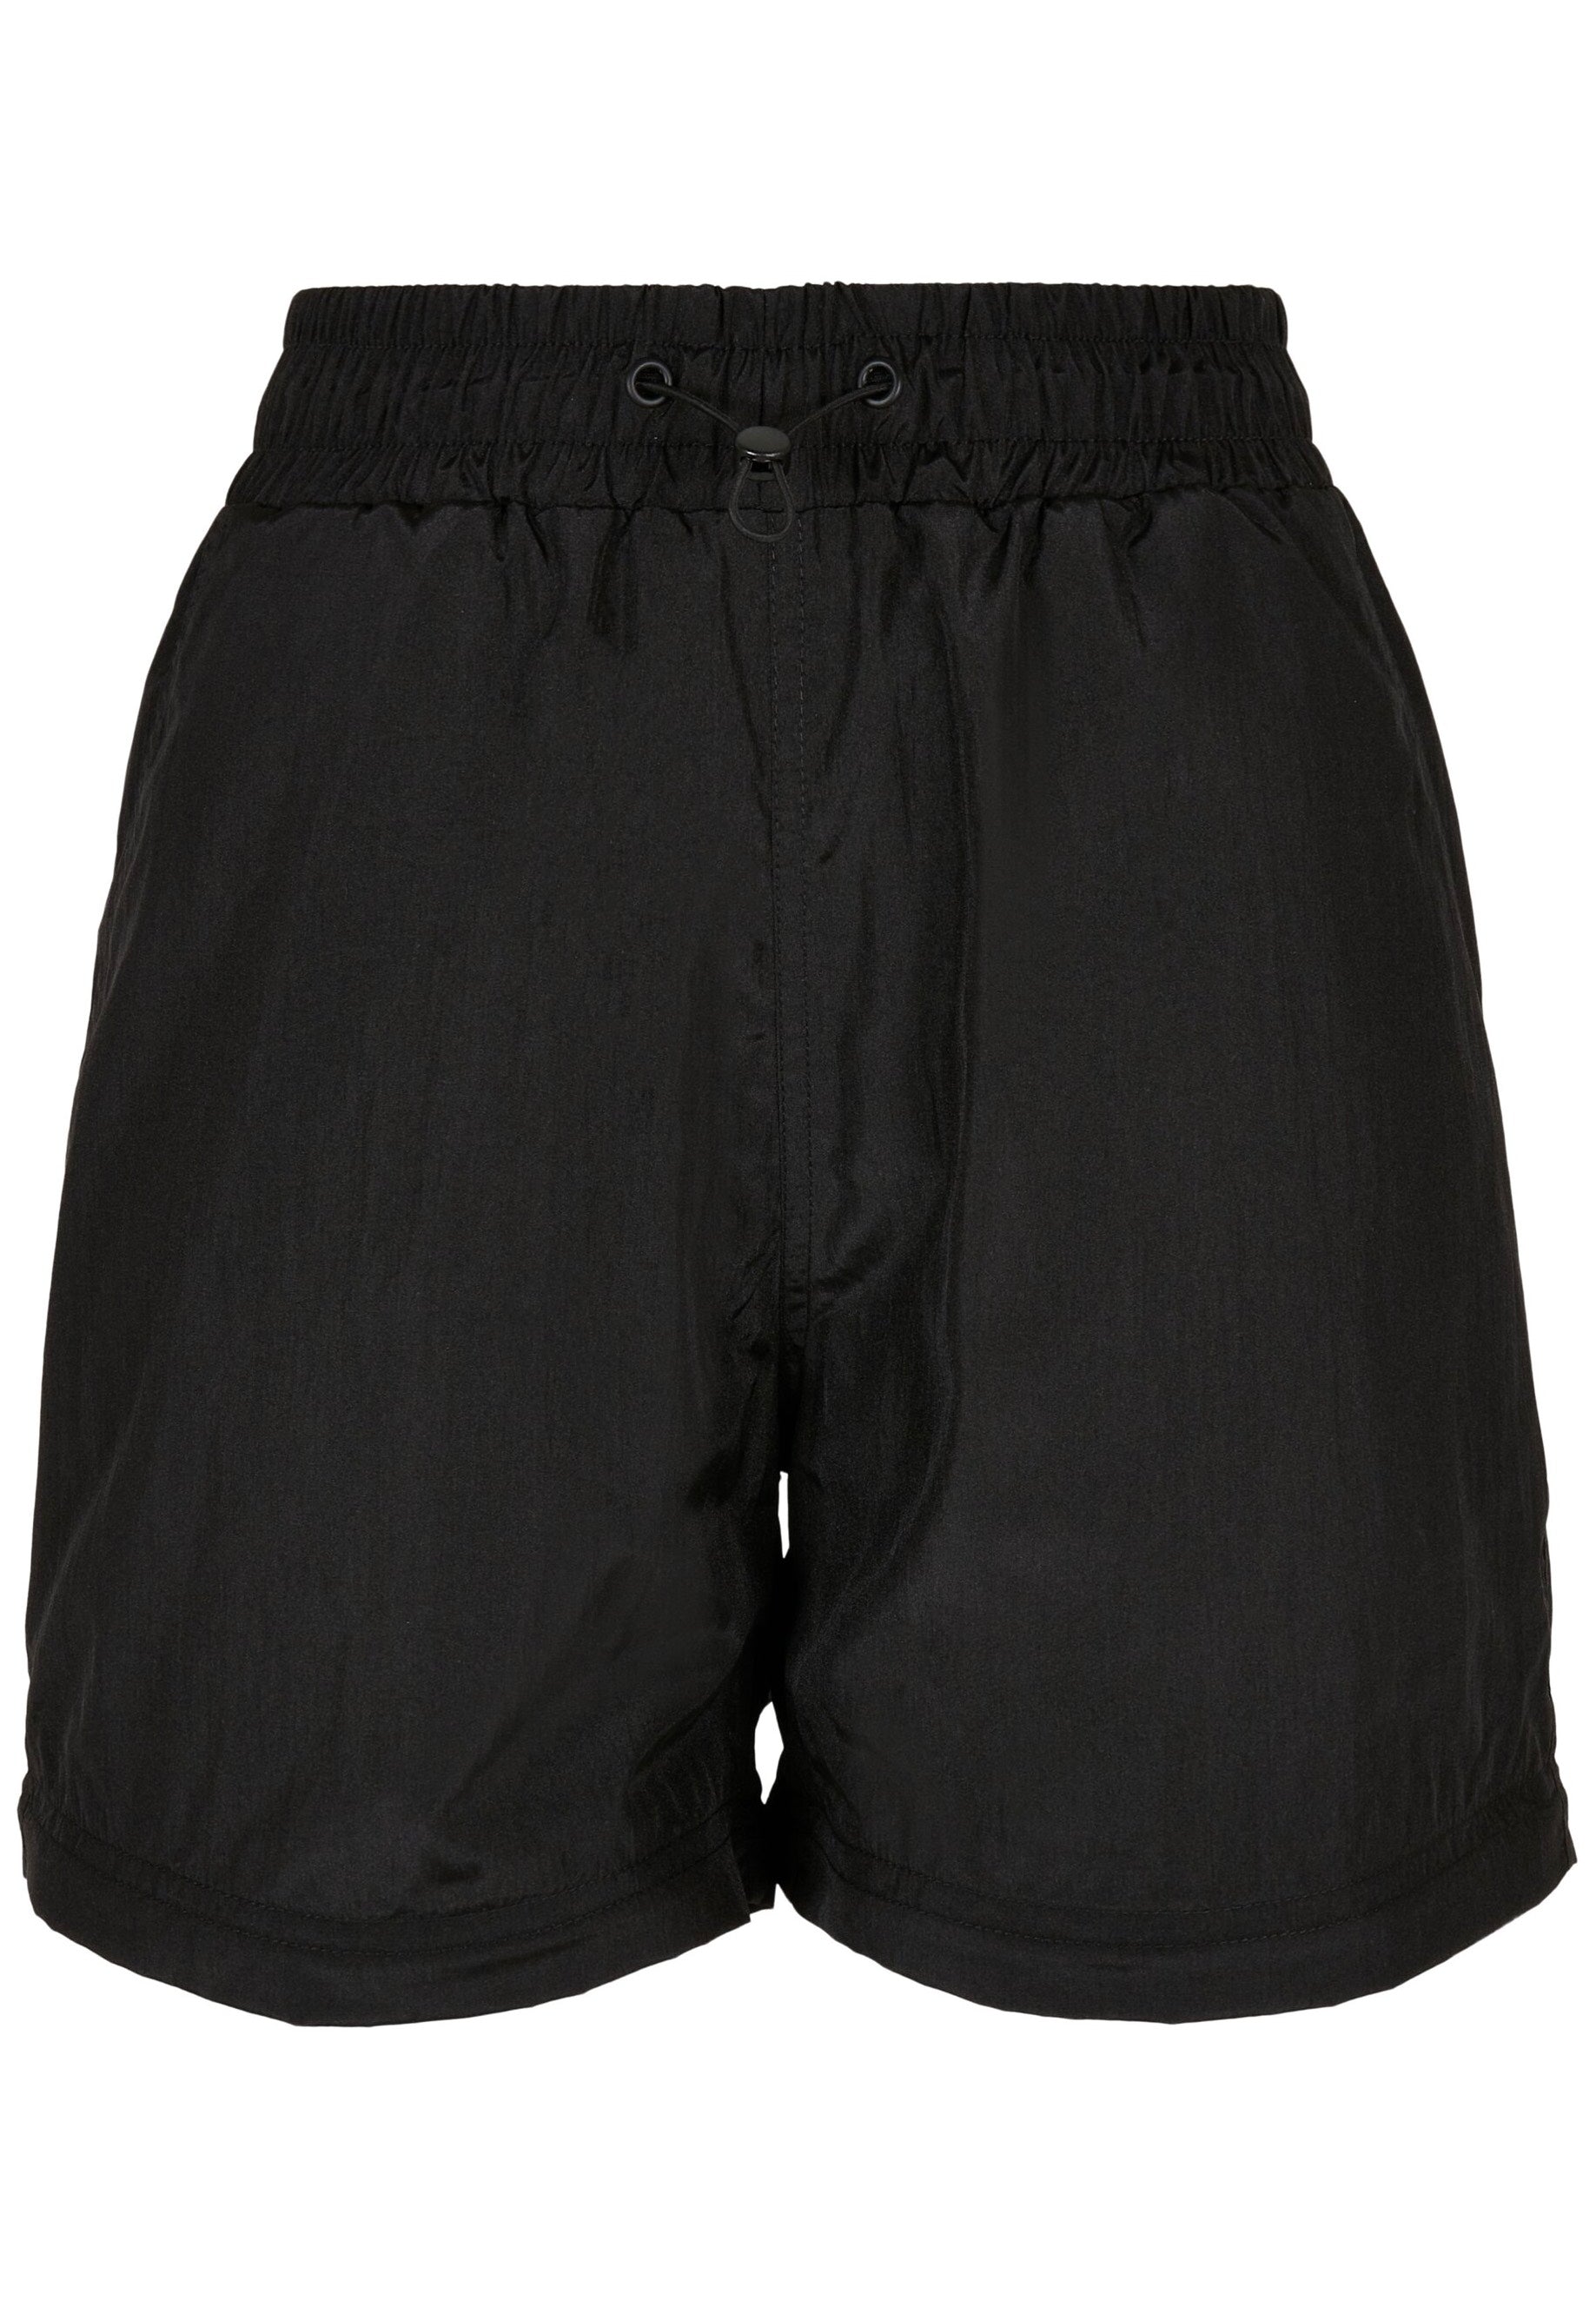 Urban Classics - Ladies Shiny Crinkle Nylon Zip Black - Pants